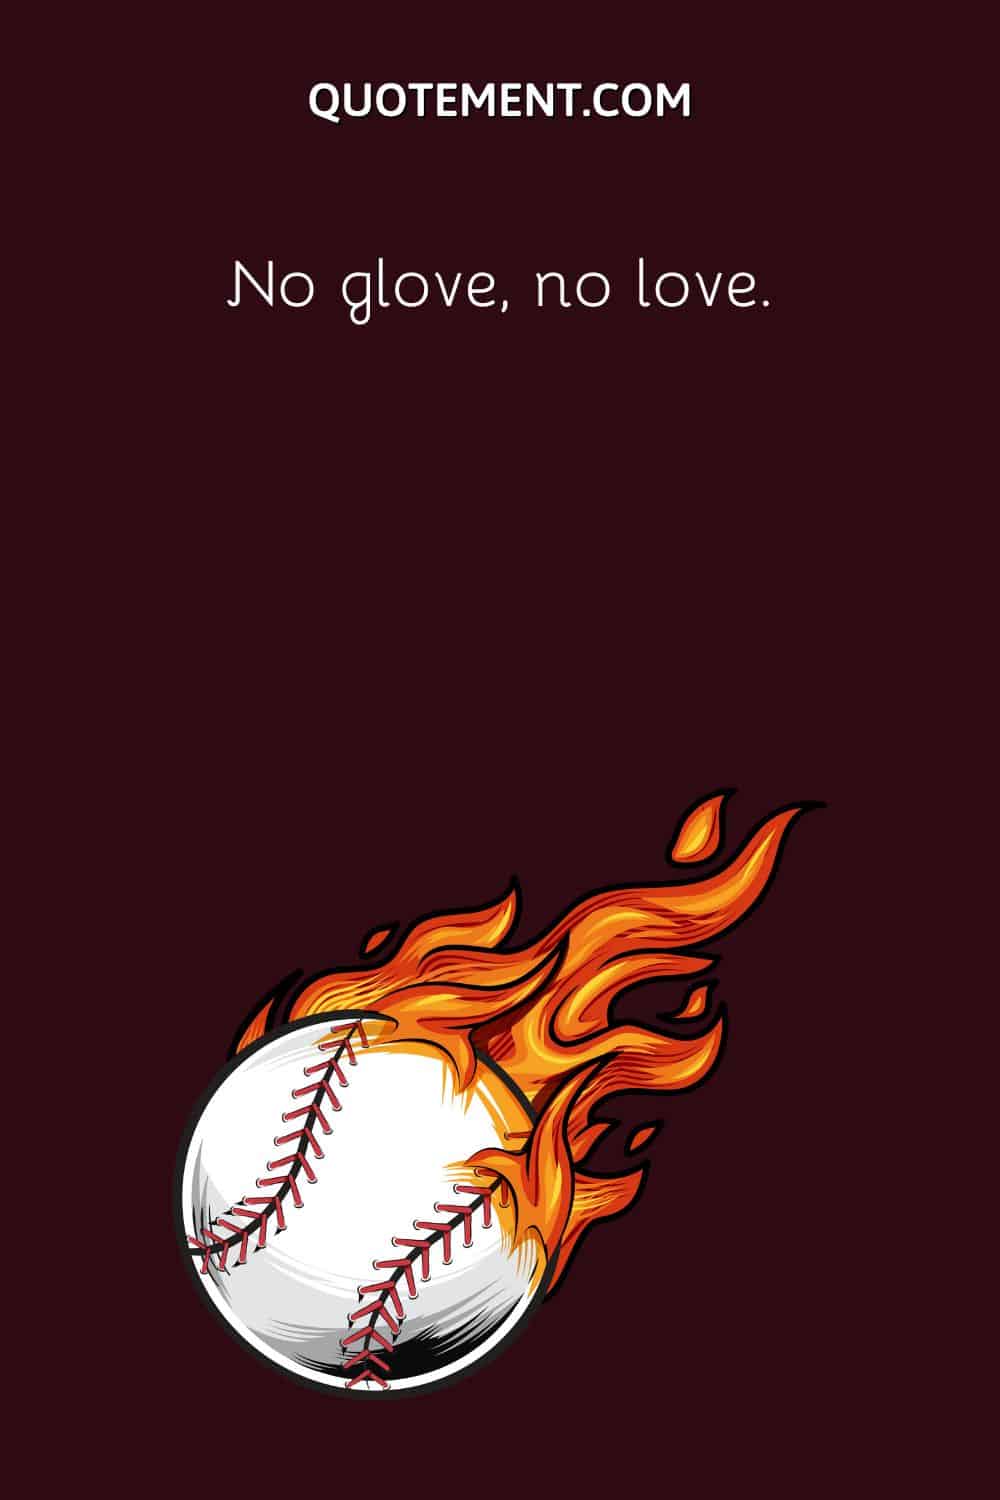 No glove, no love